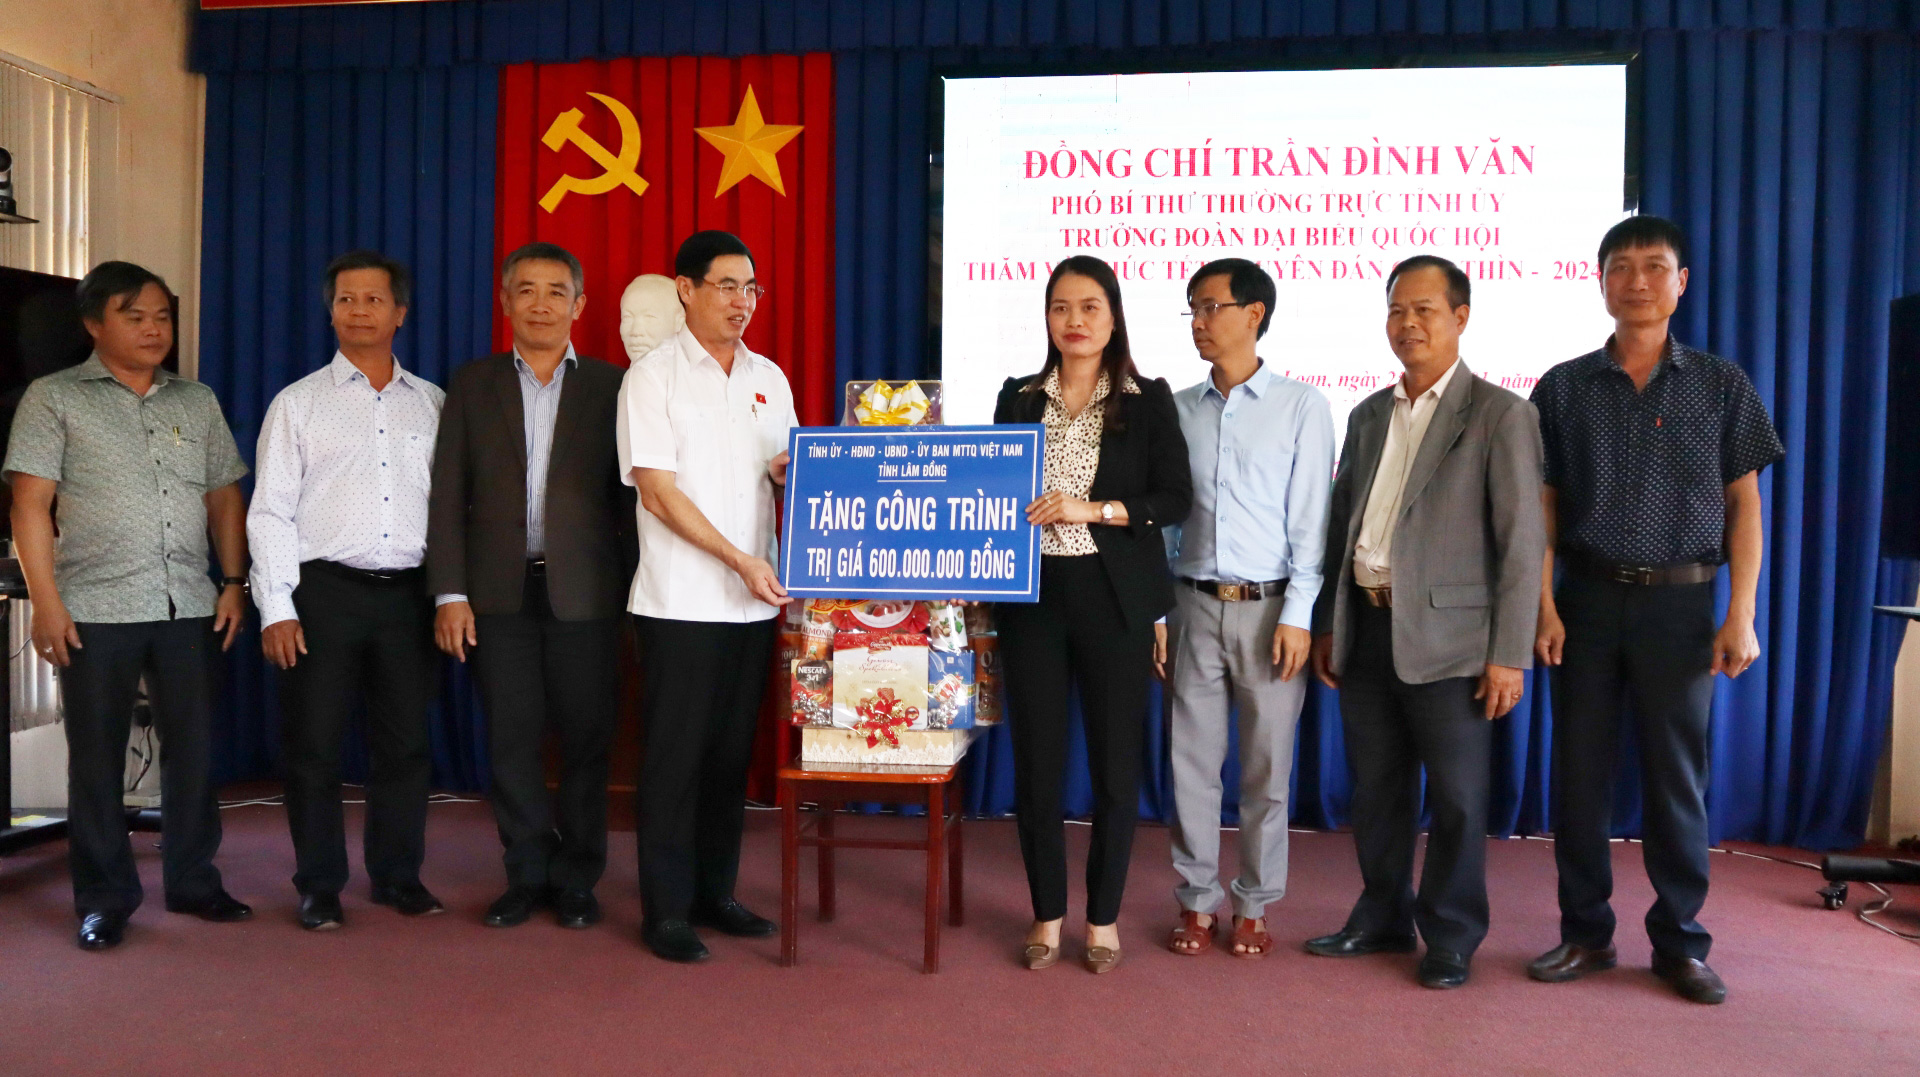 Đồng chí Trần Đình Văn tặng công trình trị giá 600 triệu đồng cho Đảng ủy xã Ninh Loan